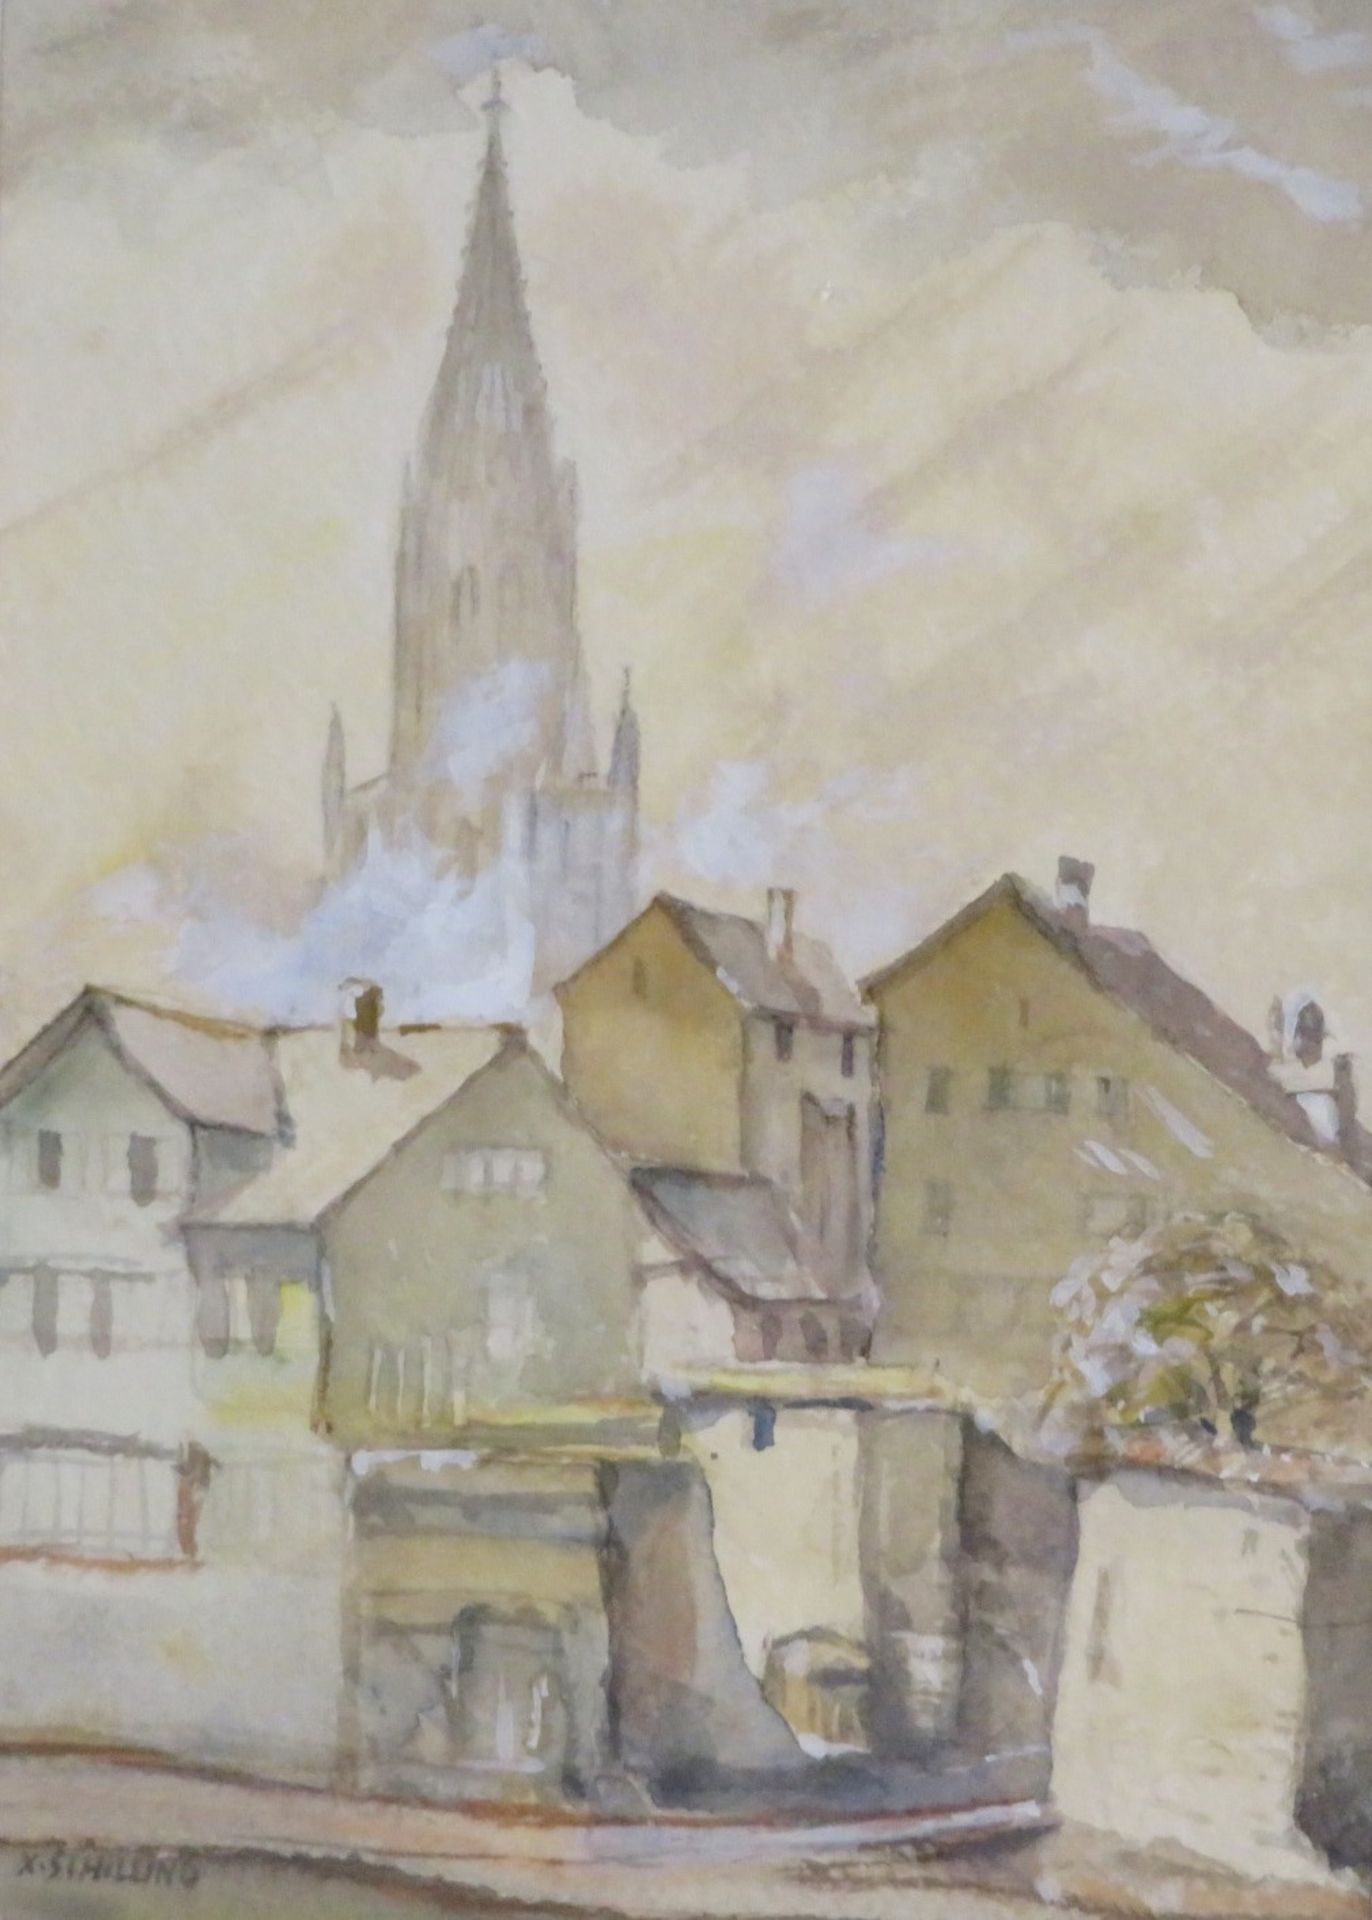 Schilling, Xaver,1890 - 1974, Burladingen - Meersburg,